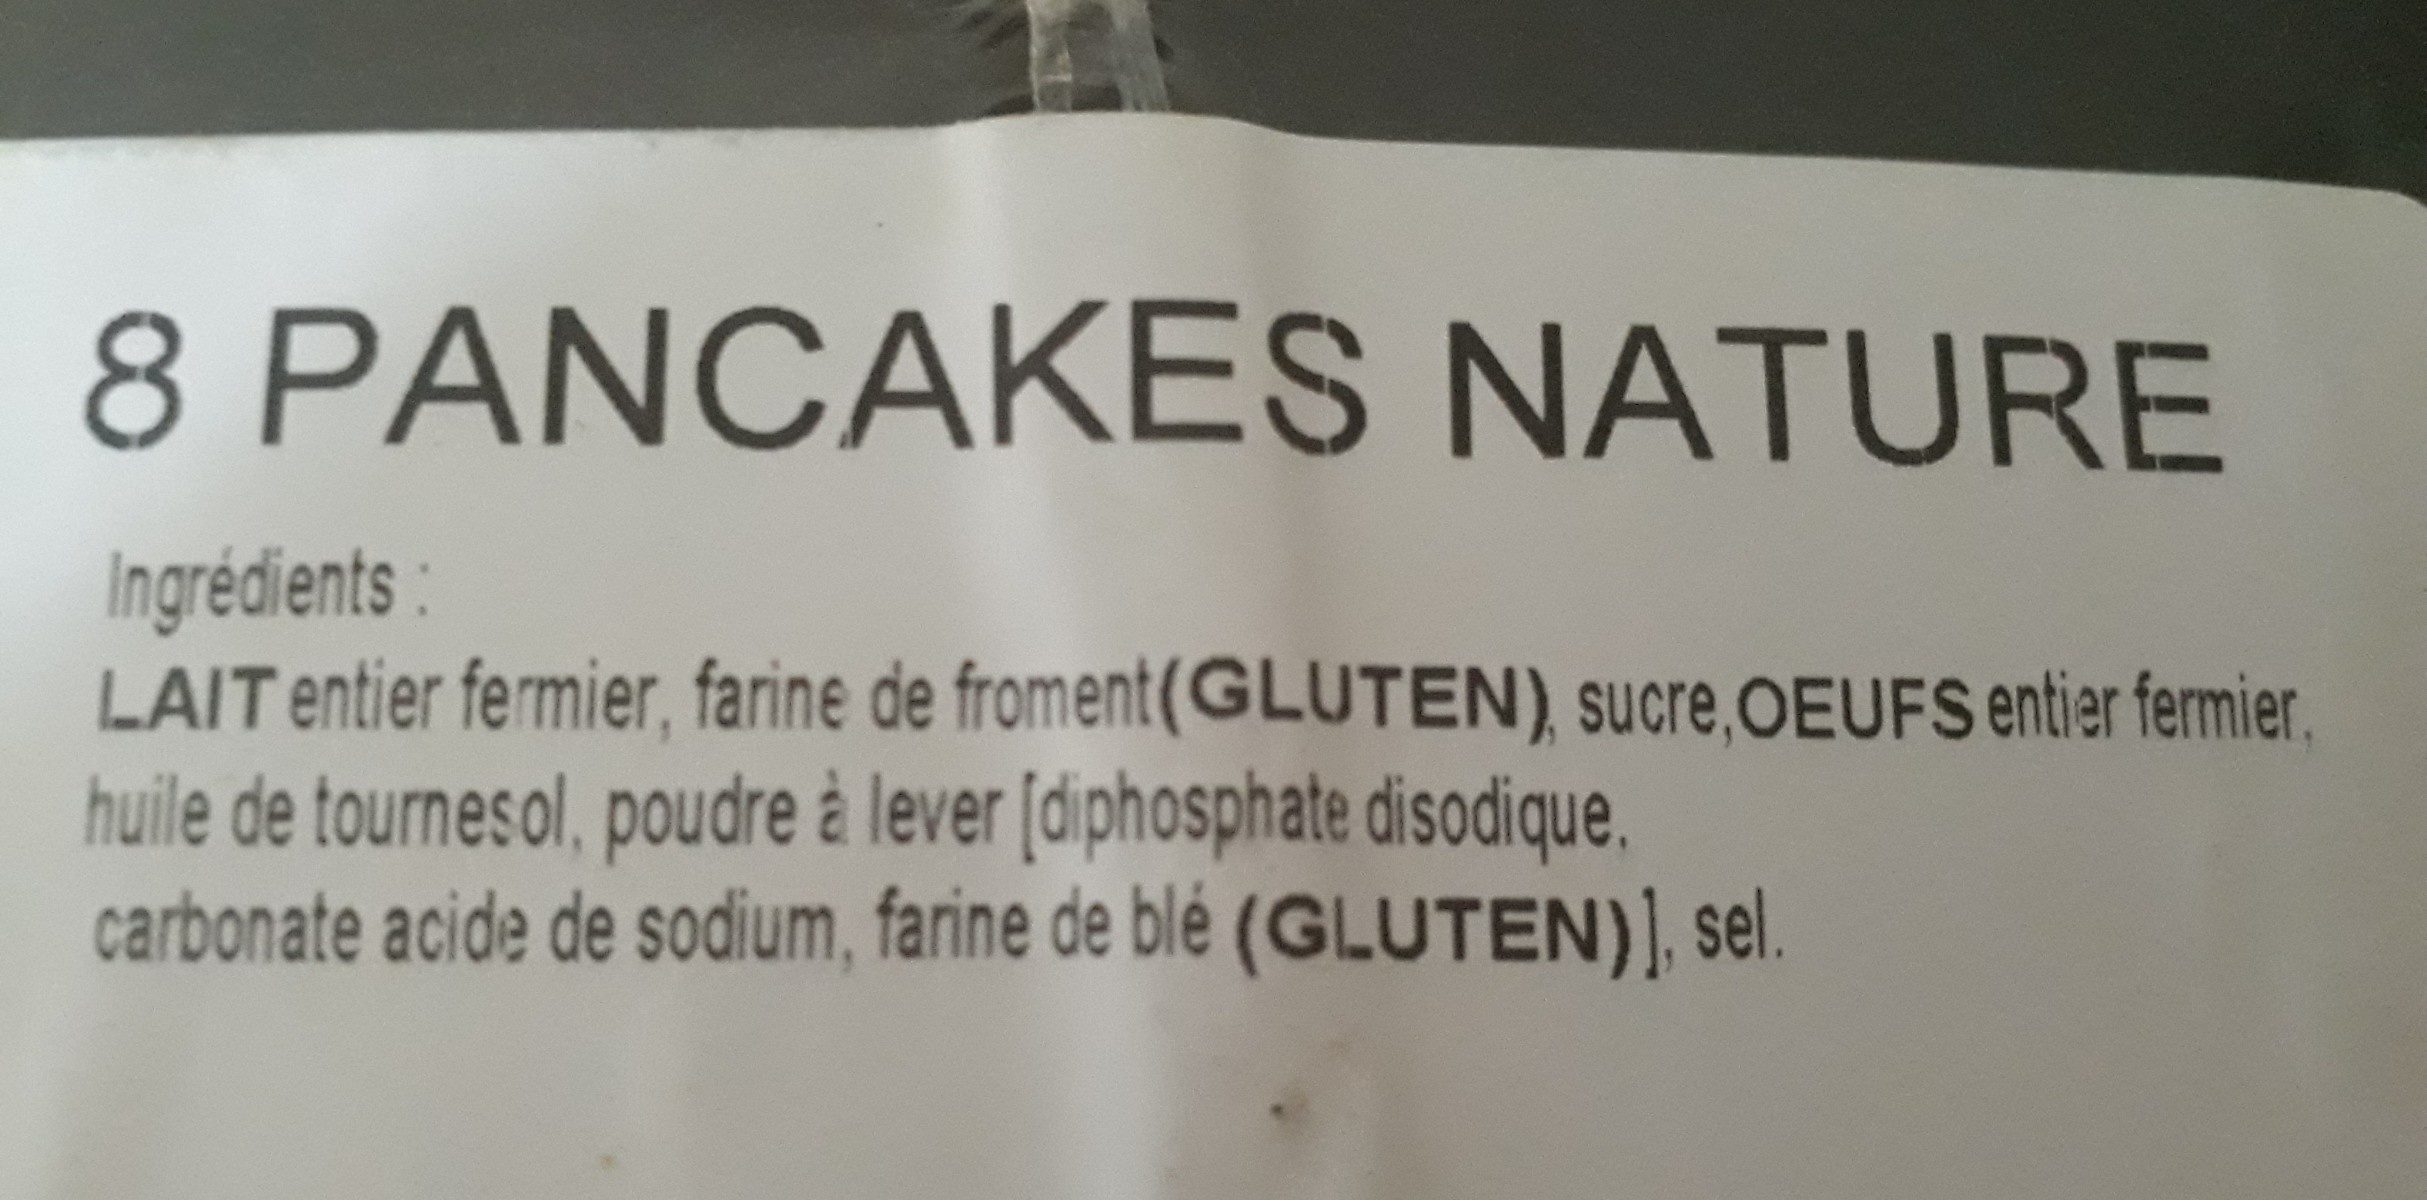 pancakes nature - Ingredients - fr